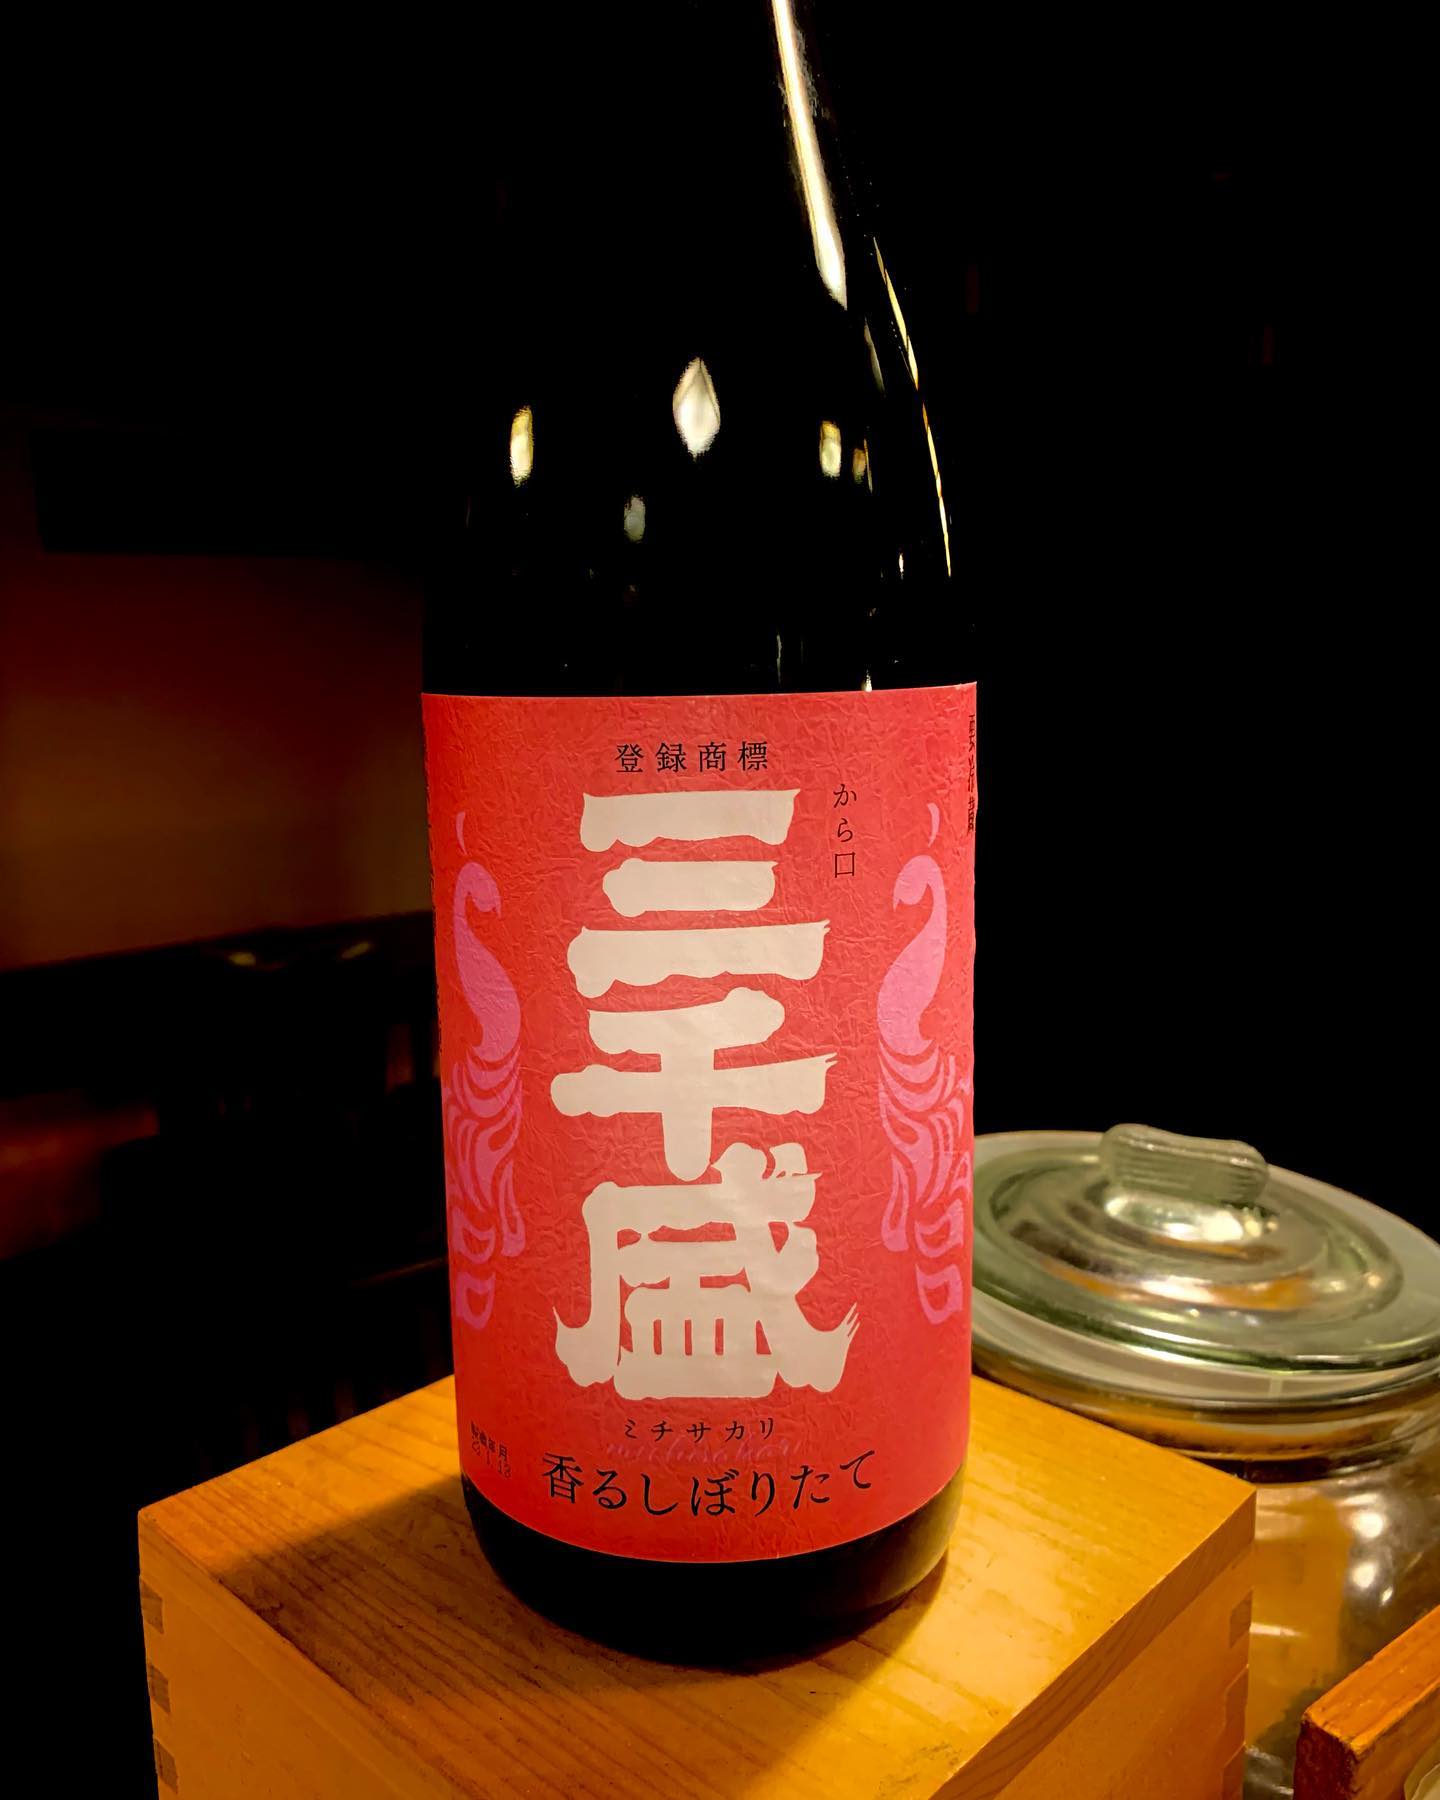 うち自慢の日本酒
「三千盛」
スっとした日本酒でうちのお刺身に合わせて間違え無し️他にもいろいろ日本酒揃えてます
  #